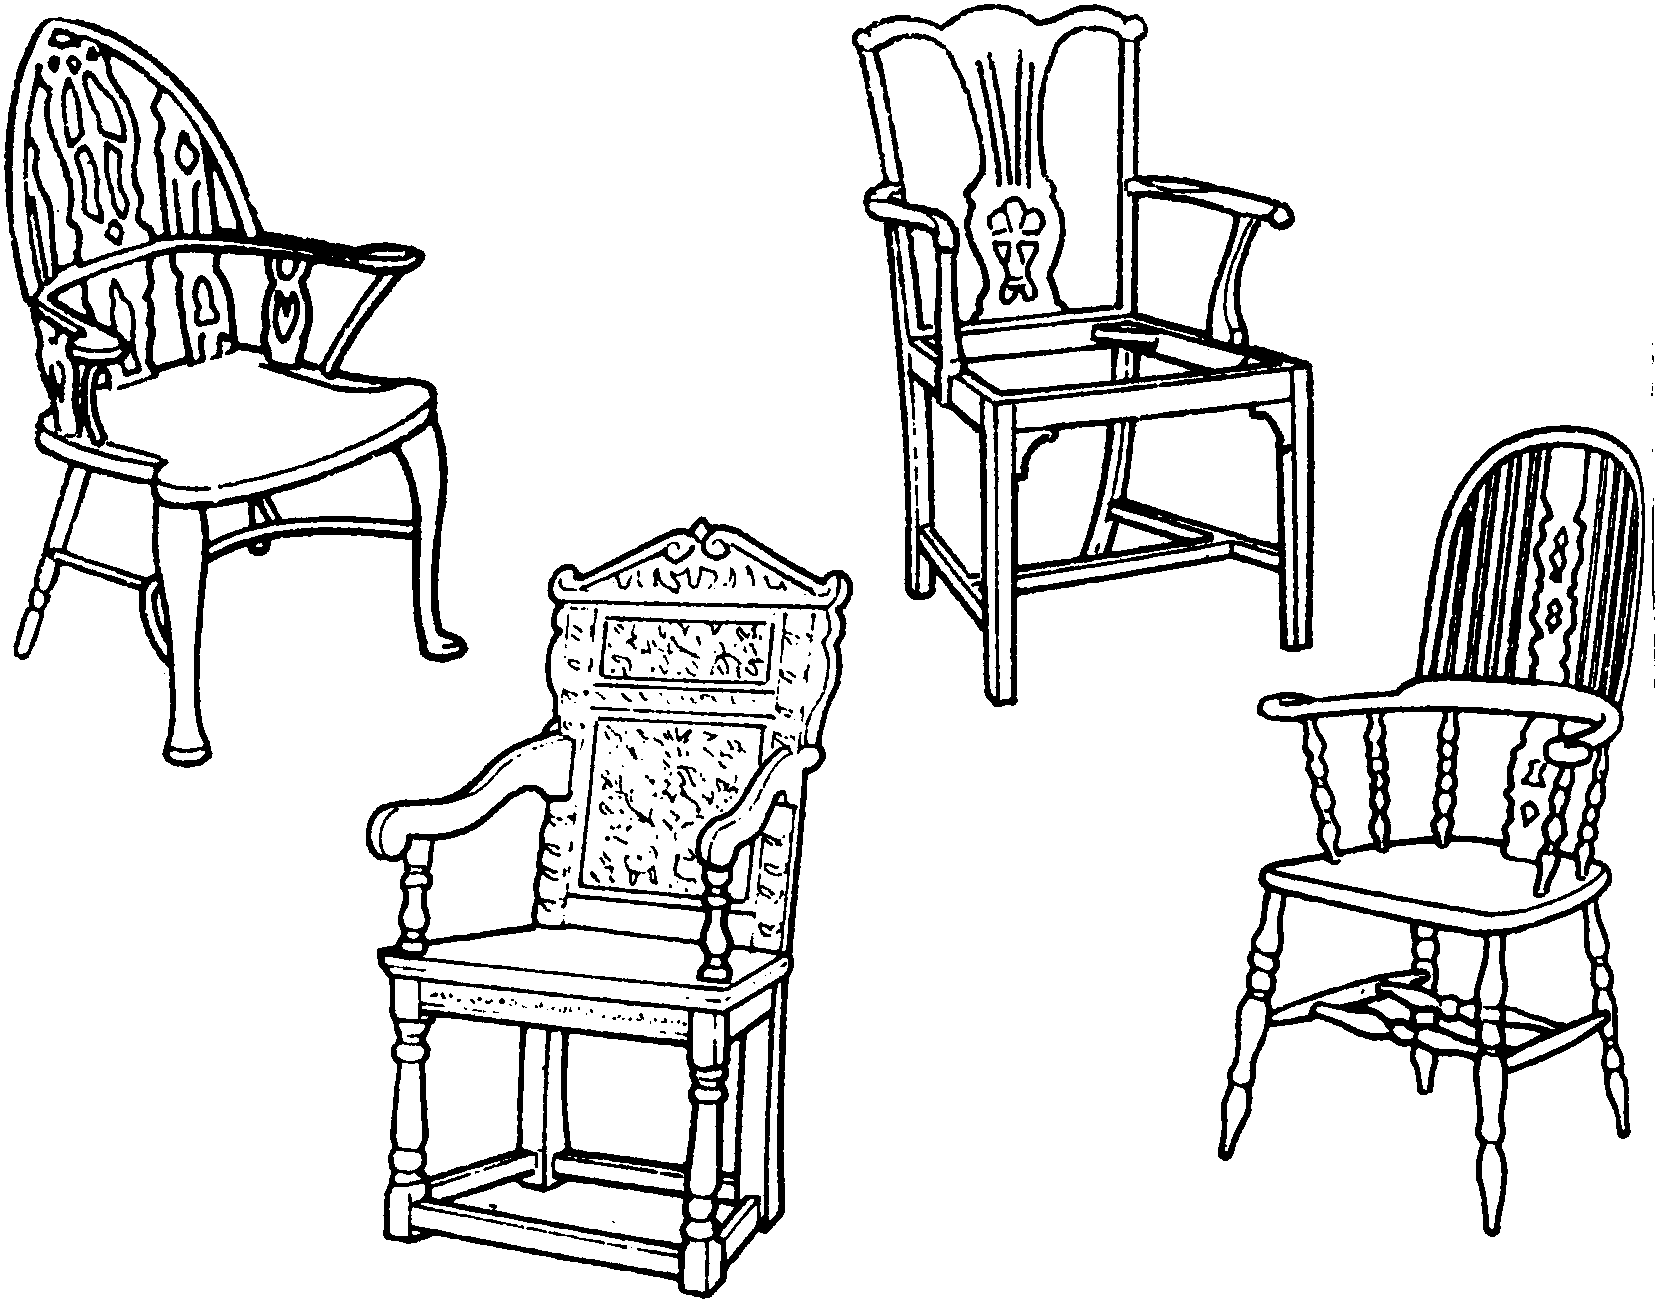 椅子各部件详细图样